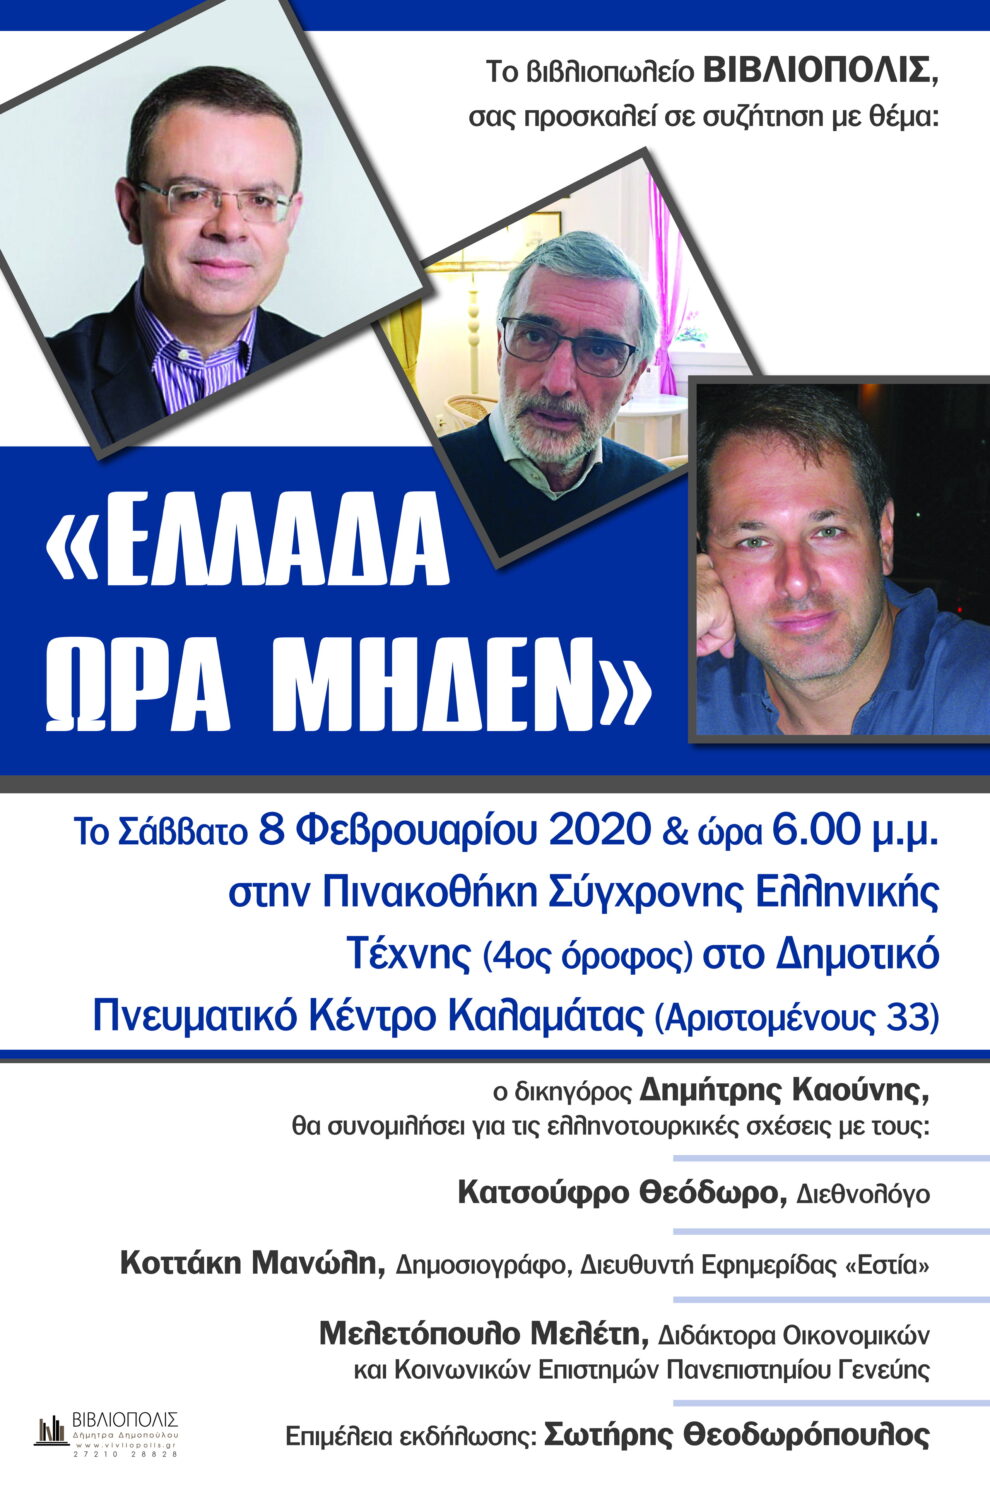 «Ελλάδα Ώρα Μηδέν»: Εκδήλωση για τις ελληνοτουρκικές σχέσεις στην Καλαμάτα